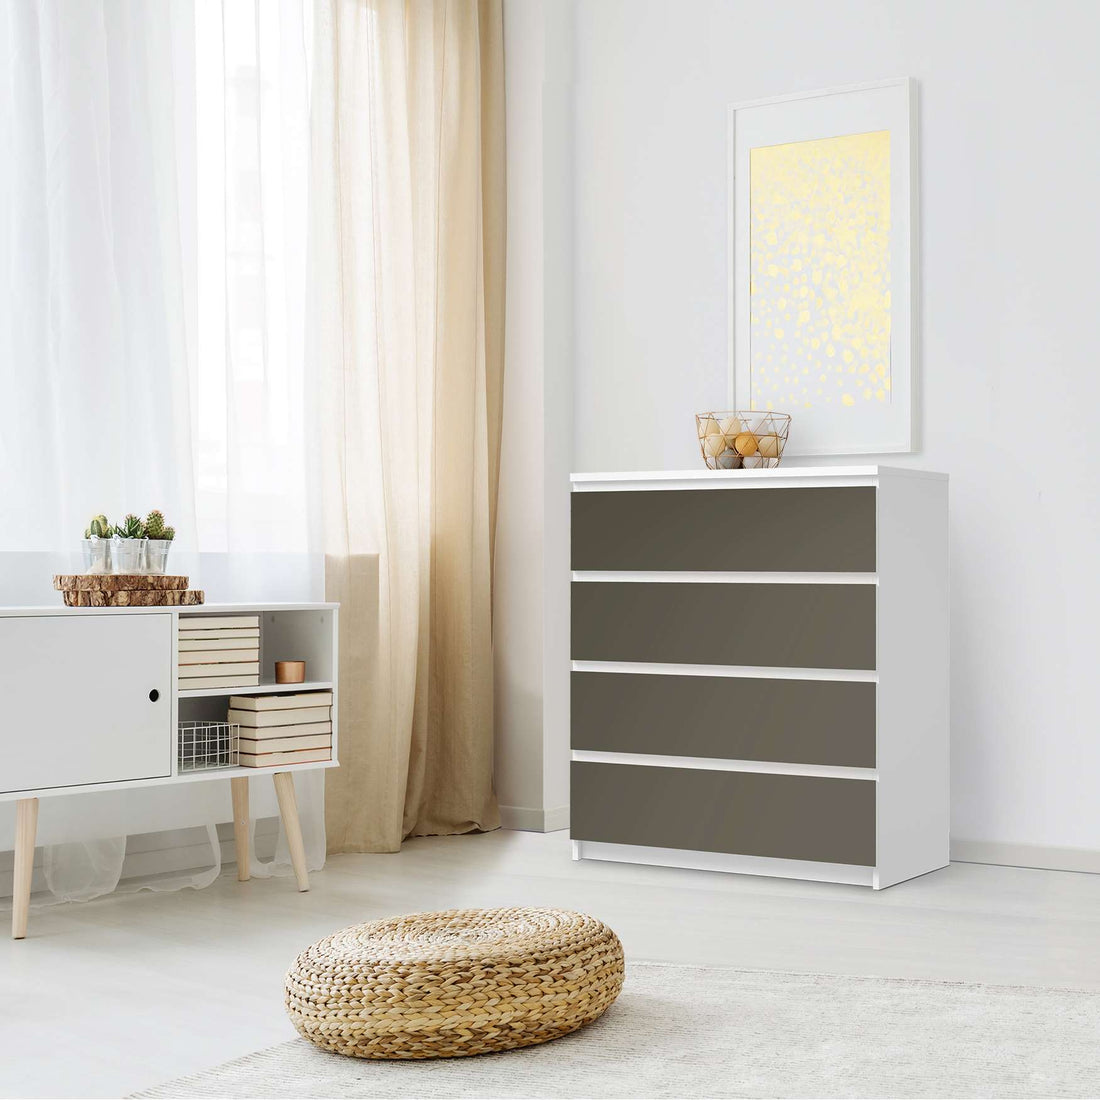 Folie für Möbel Braungrau Dark - IKEA Malm Kommode 4 Schubladen - Schlafzimmer